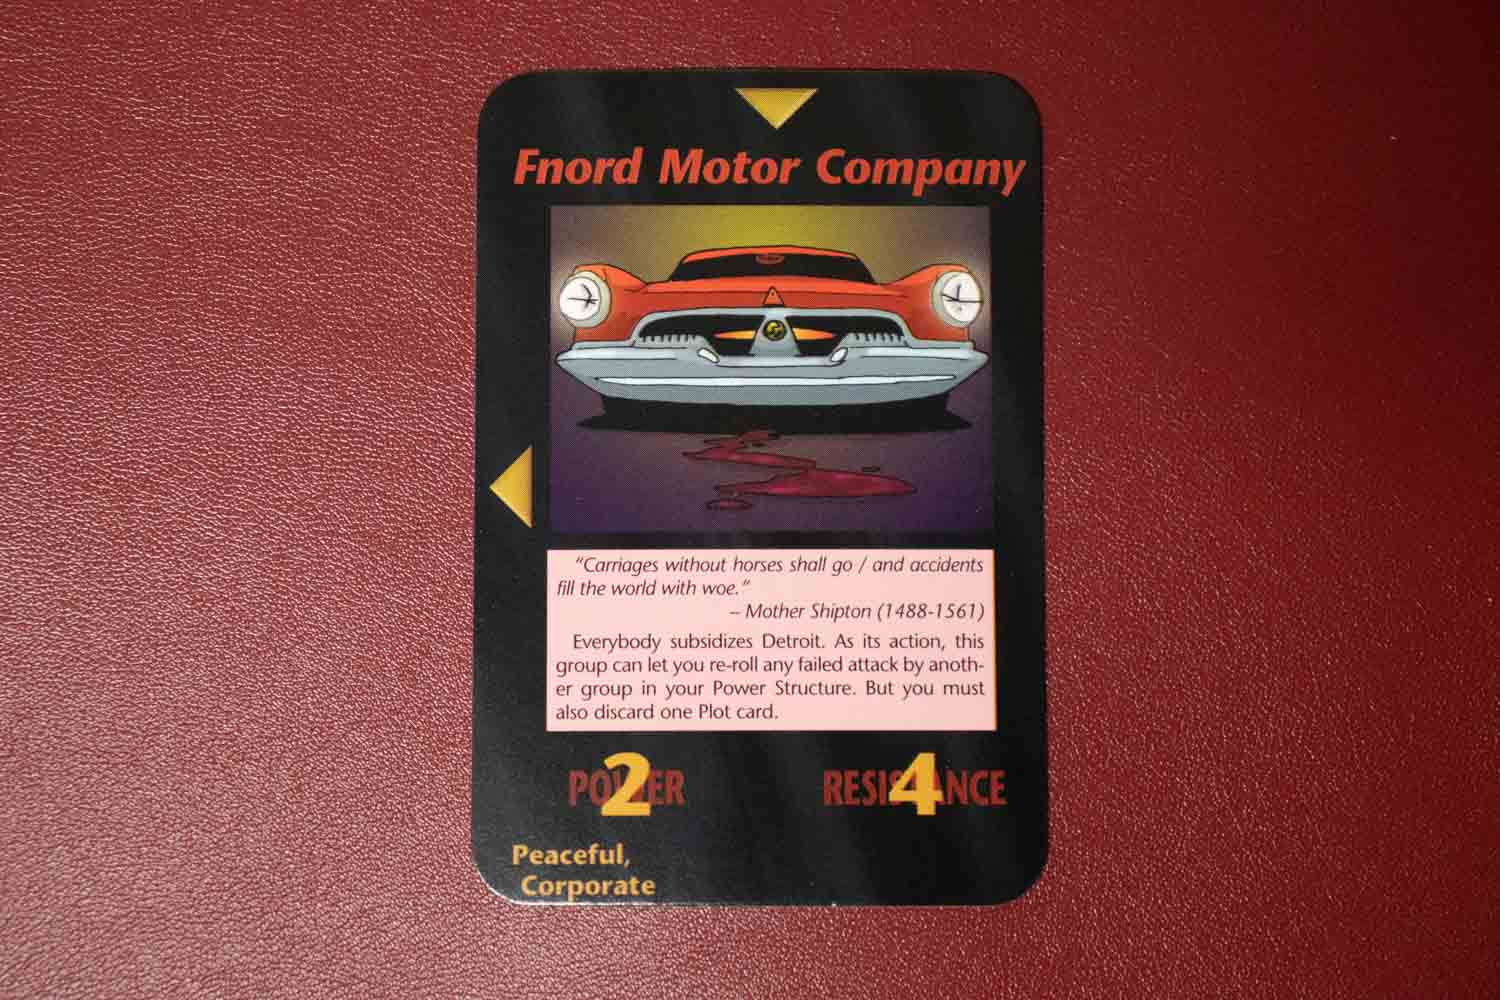 【イルミナティカード】Fnord Motor Companyの詳細と都市伝説まとめ【隠蔽思考の自動車会社】